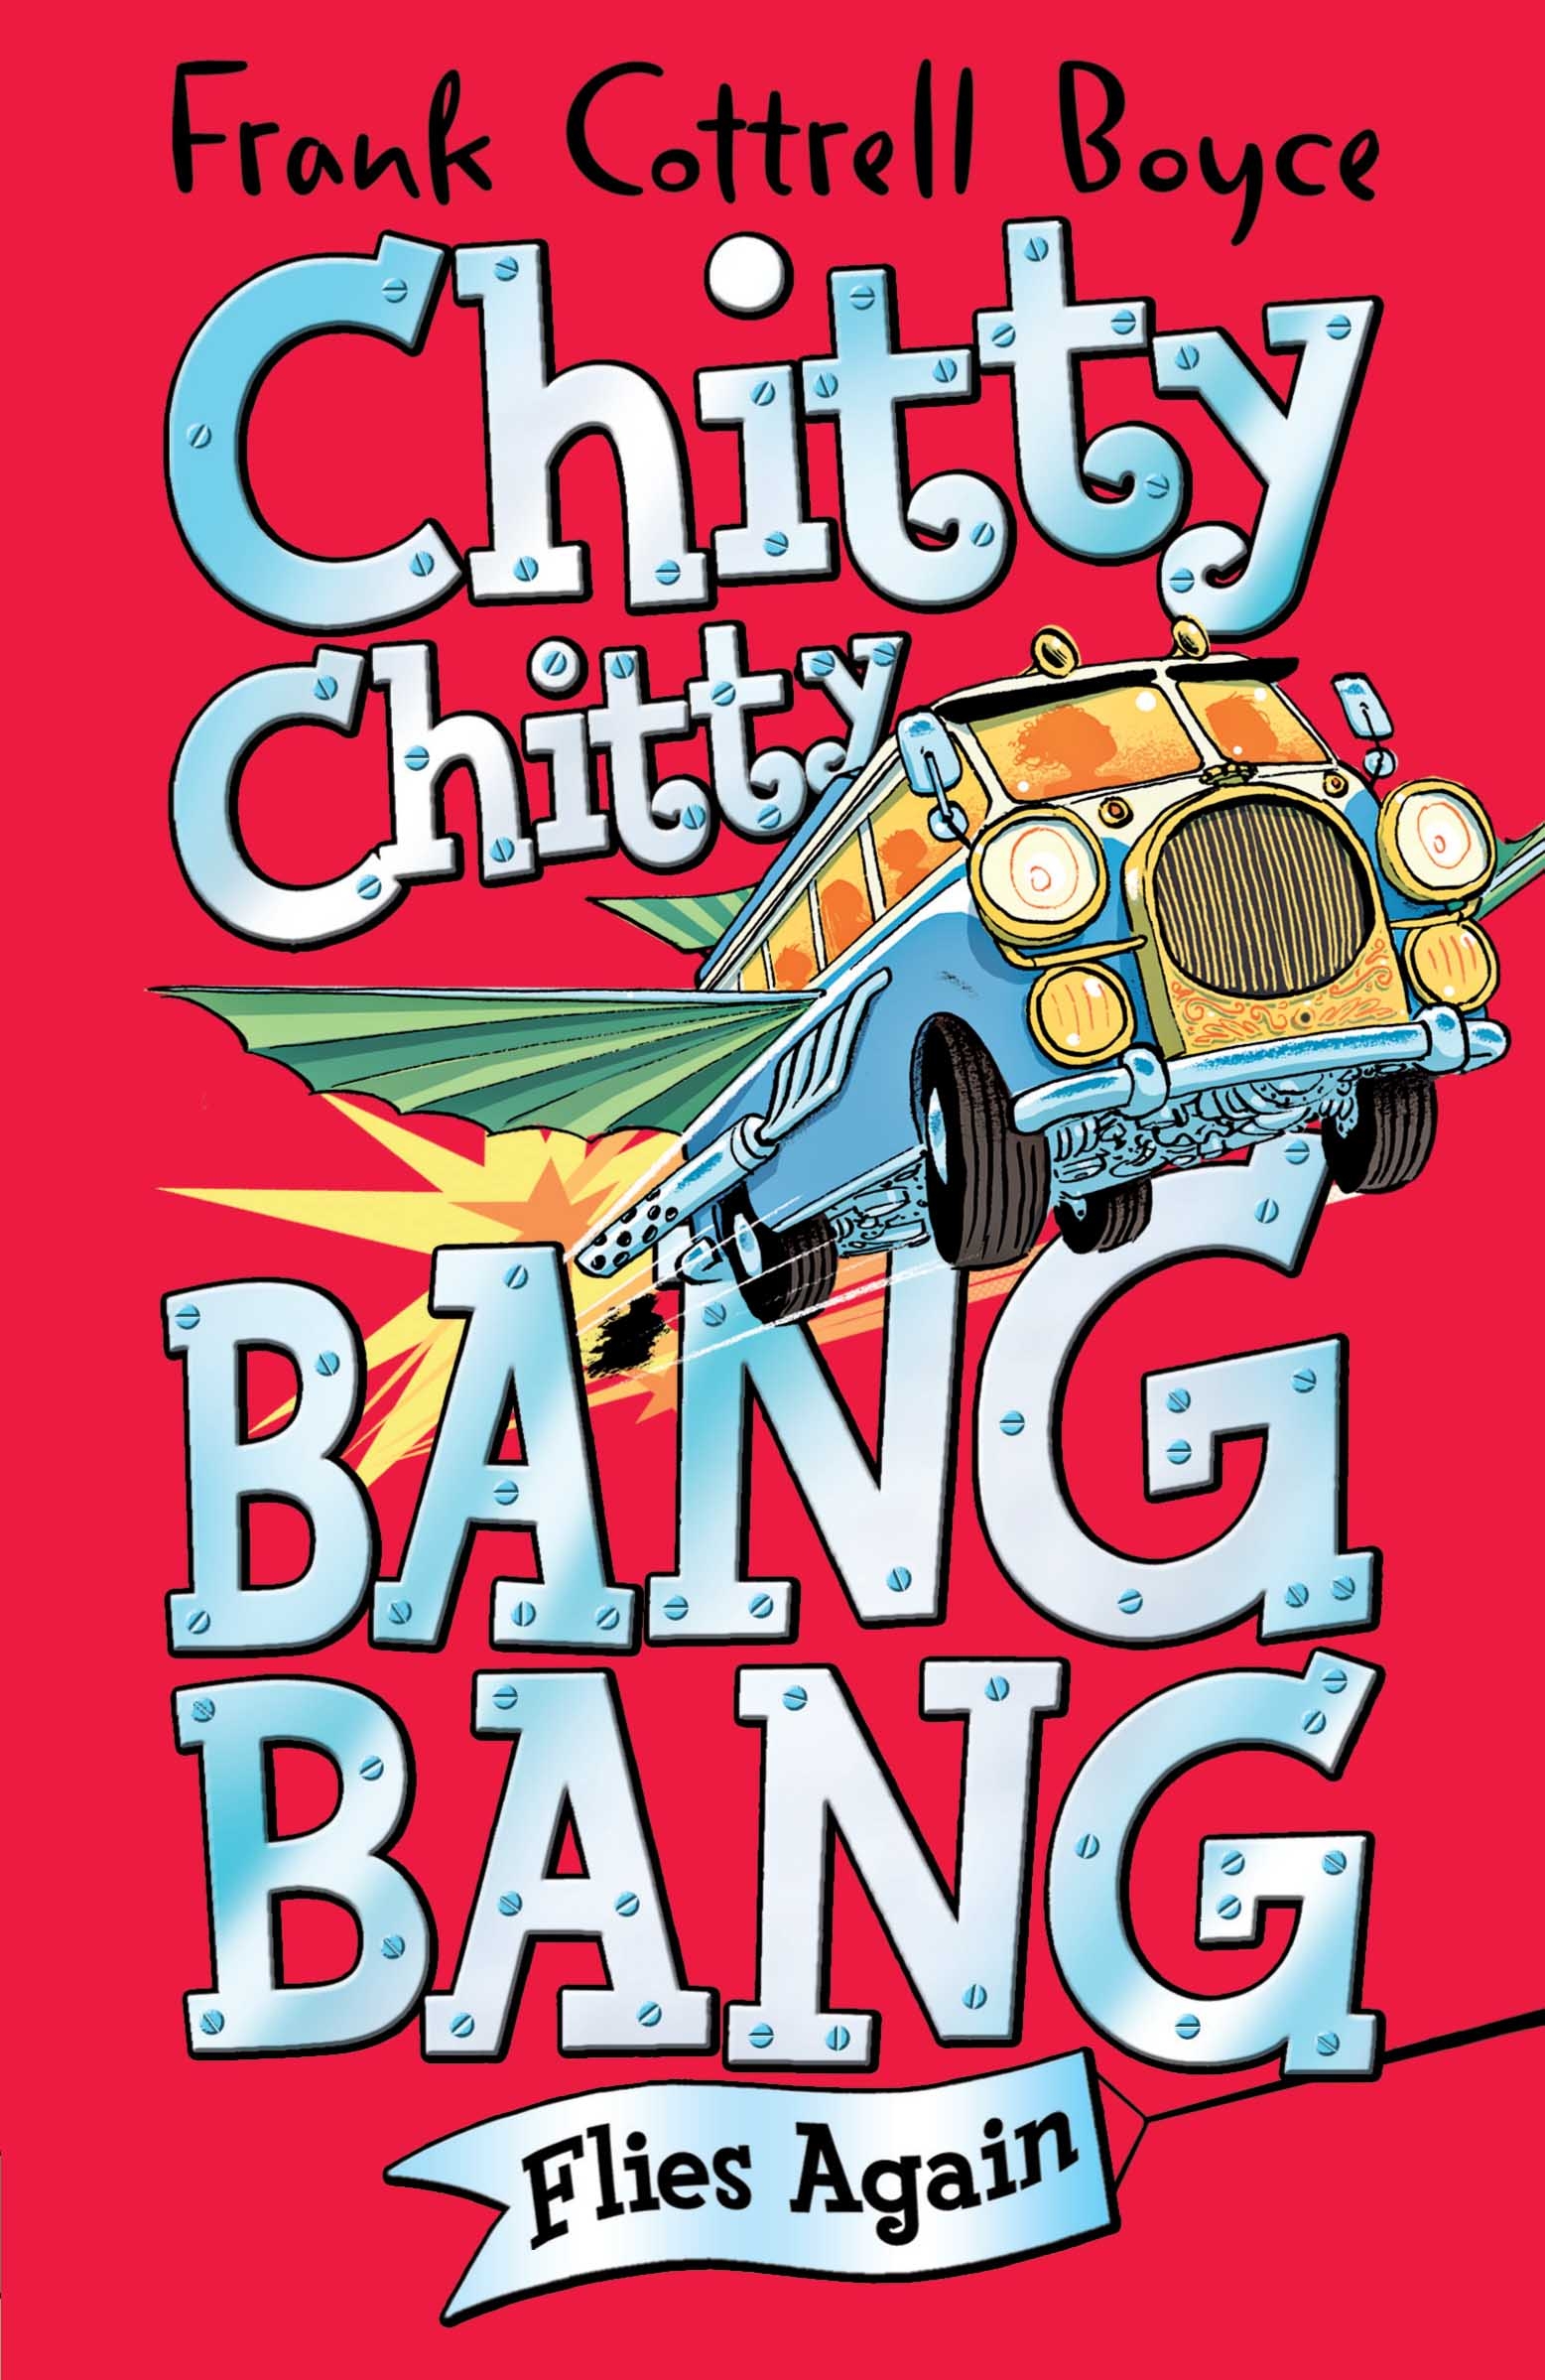 Chitty Chitty Bang Bang: Flies Again